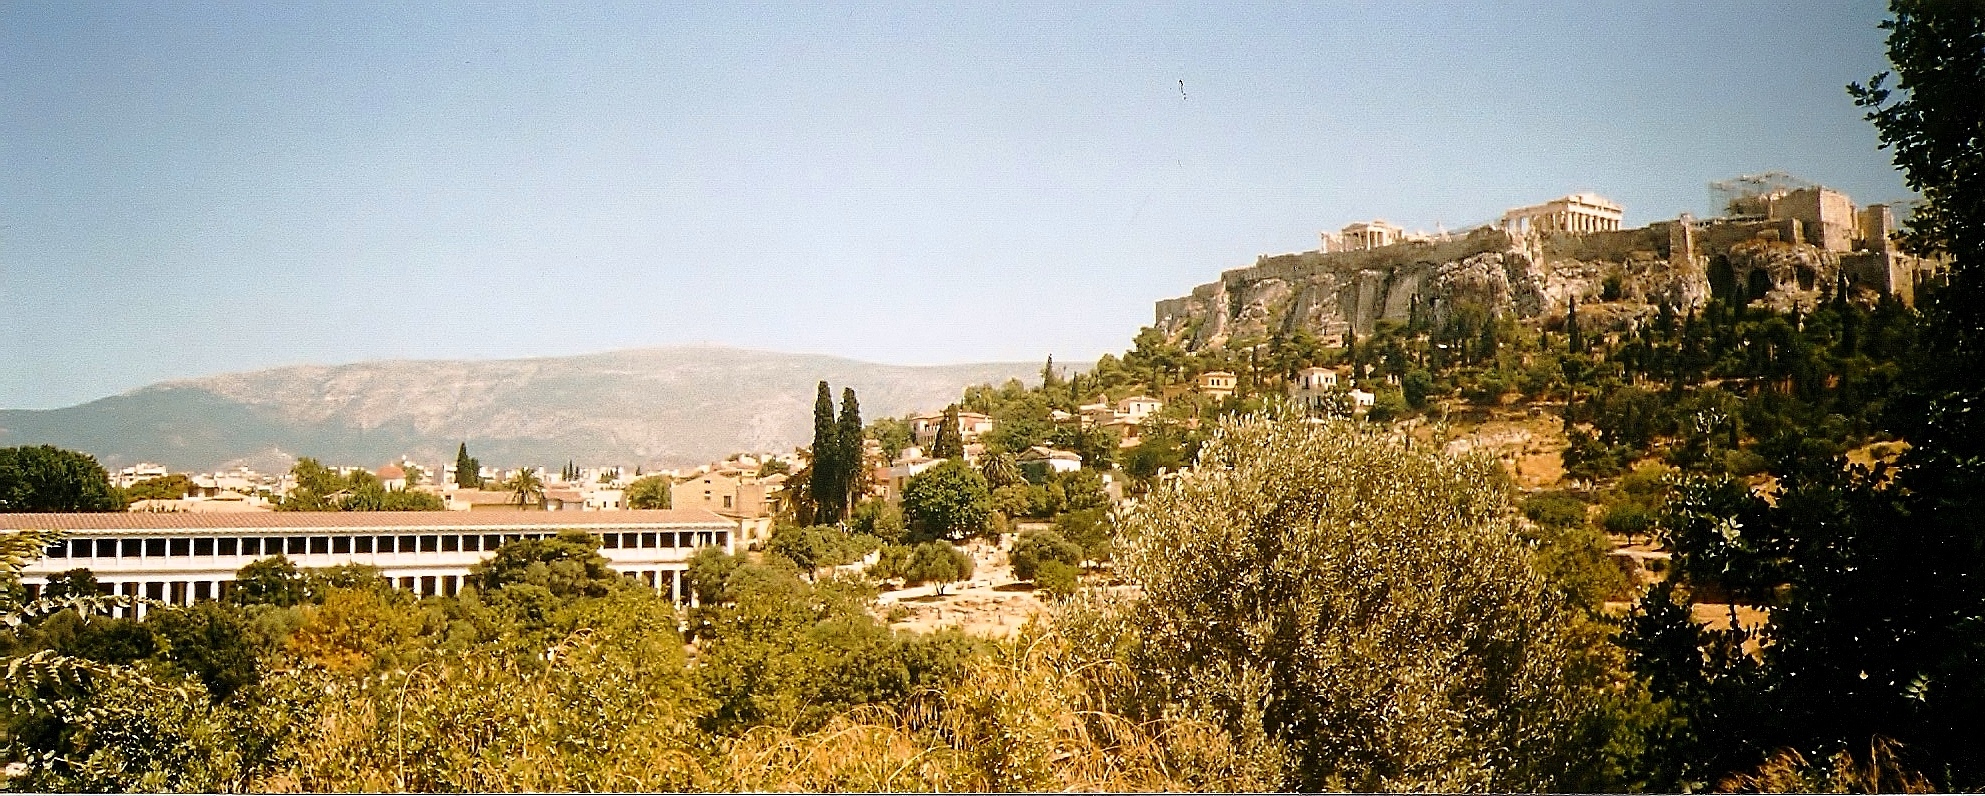 athens acropolis view